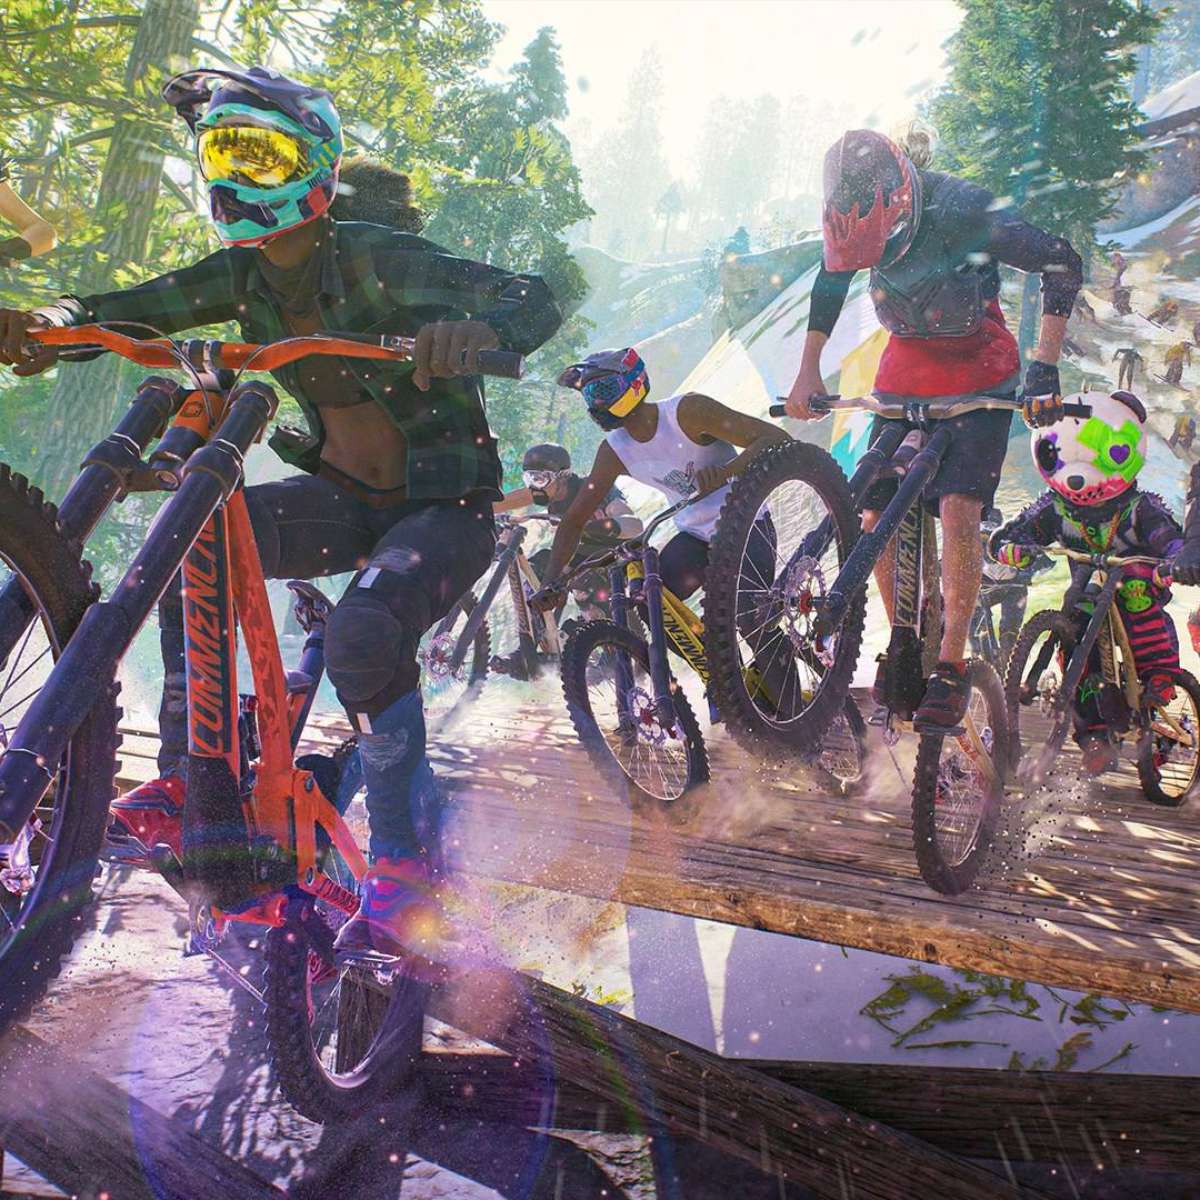 Xbox oferece Riders Republic e mais 2 games grátis para jogar